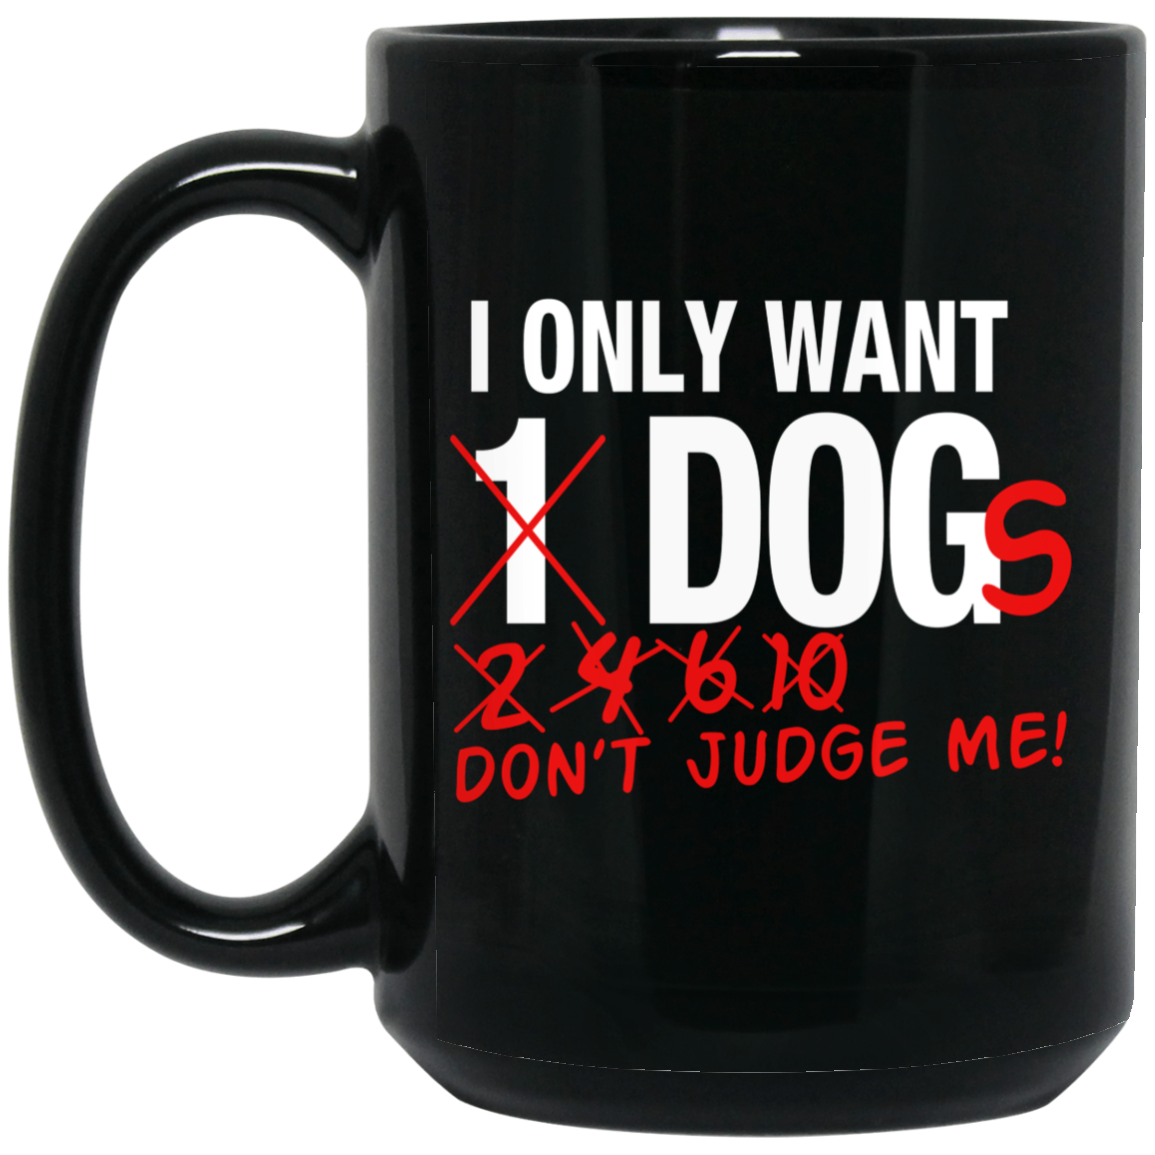 I Only Want One Dog - Black Mugs